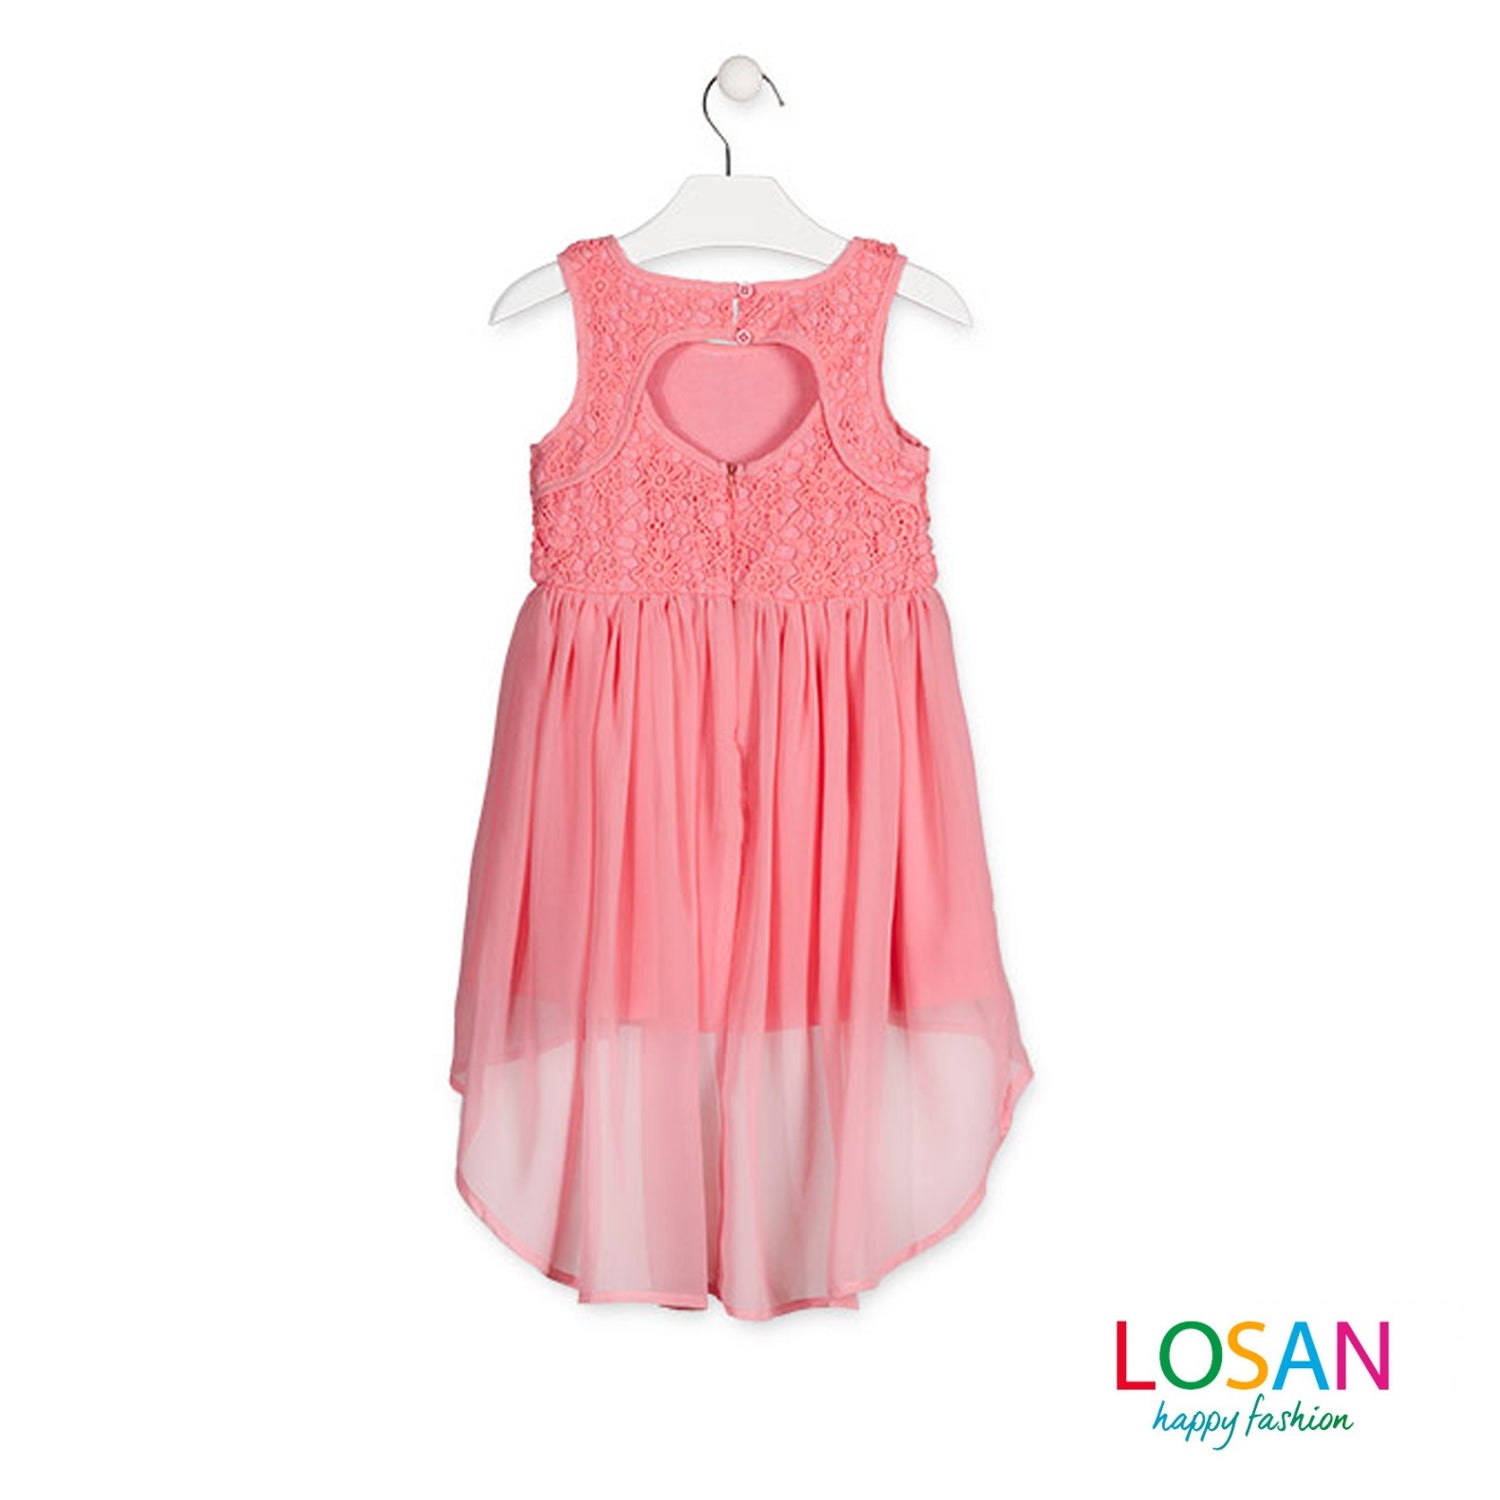 Losan - Vestito Elegante Rosa Corallo Bambina Junior